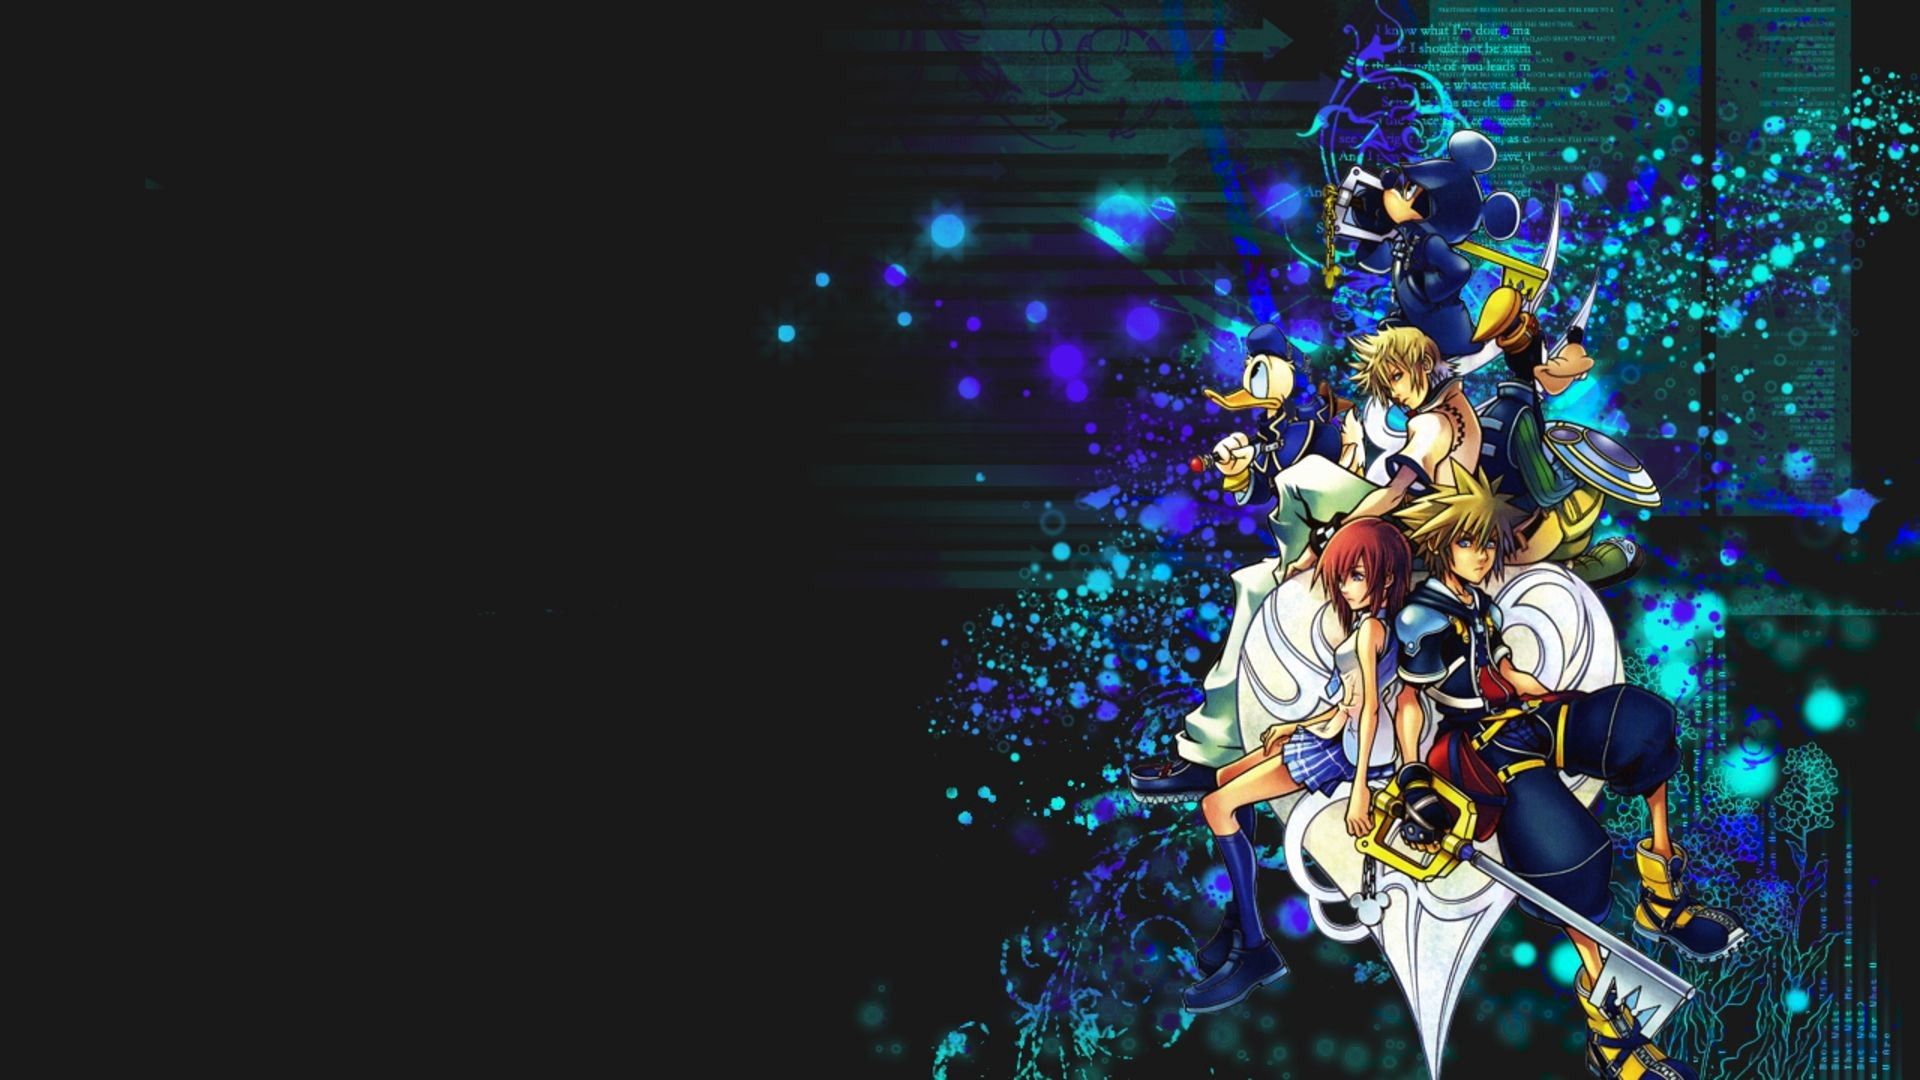 1920x1080  Kingdom Hearts 358/2 Days - Organization XIII Theme [REVERSE .